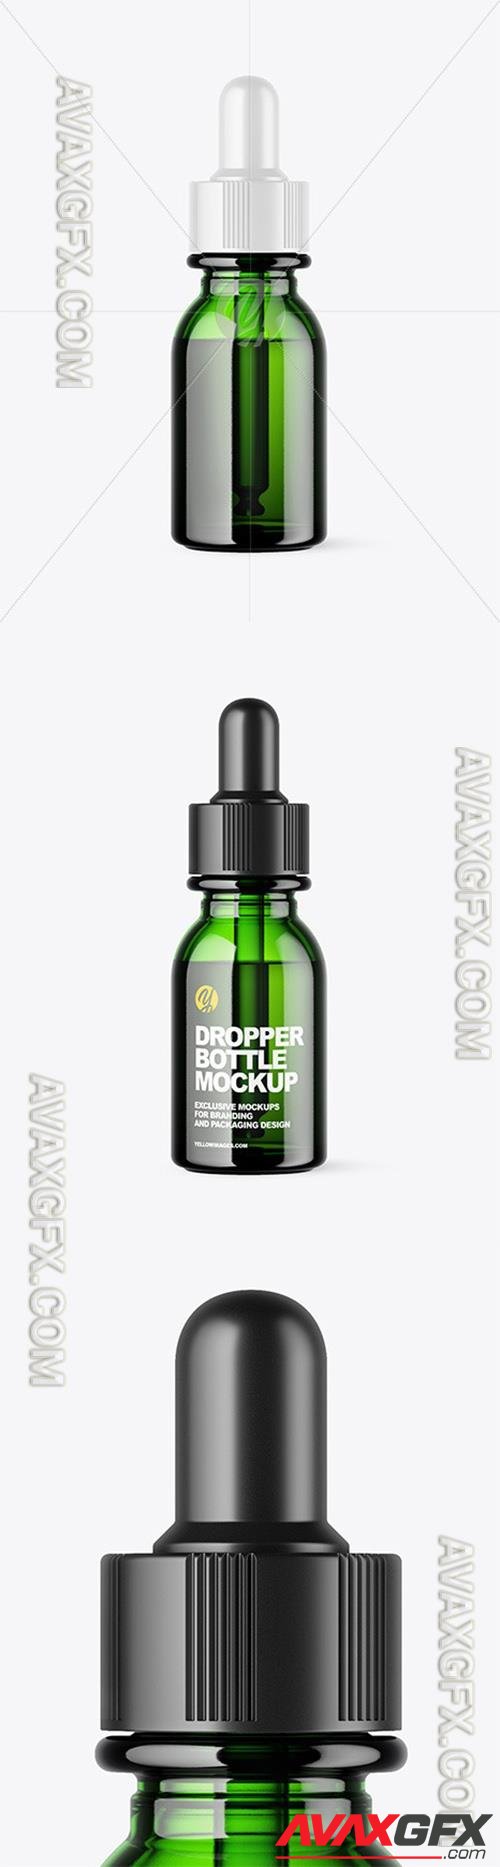 Green Glass Dropper Bottle Mockup 65463 TIF